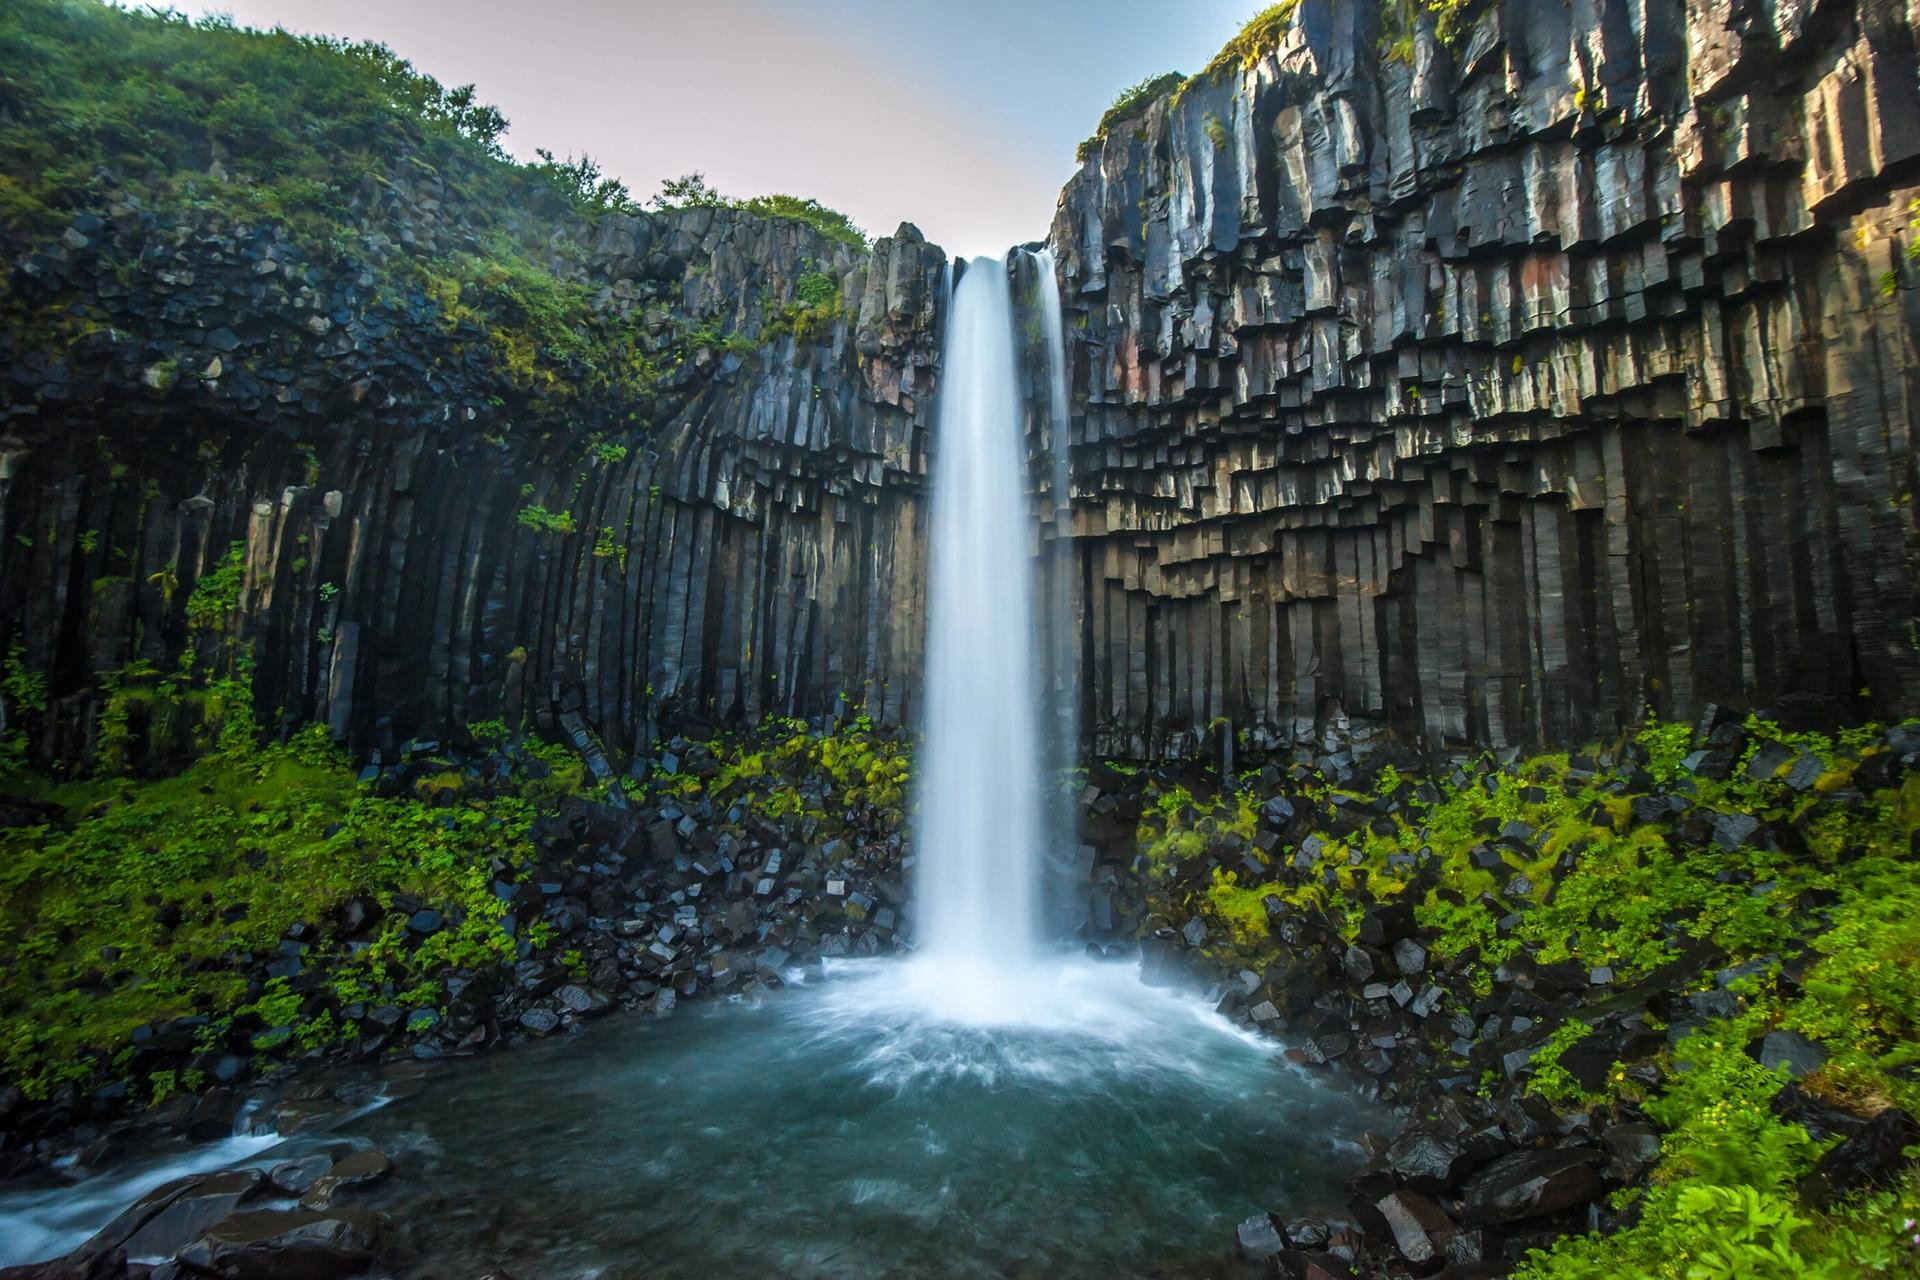 Svartifoss waterfall surrounded by dark basalt columns